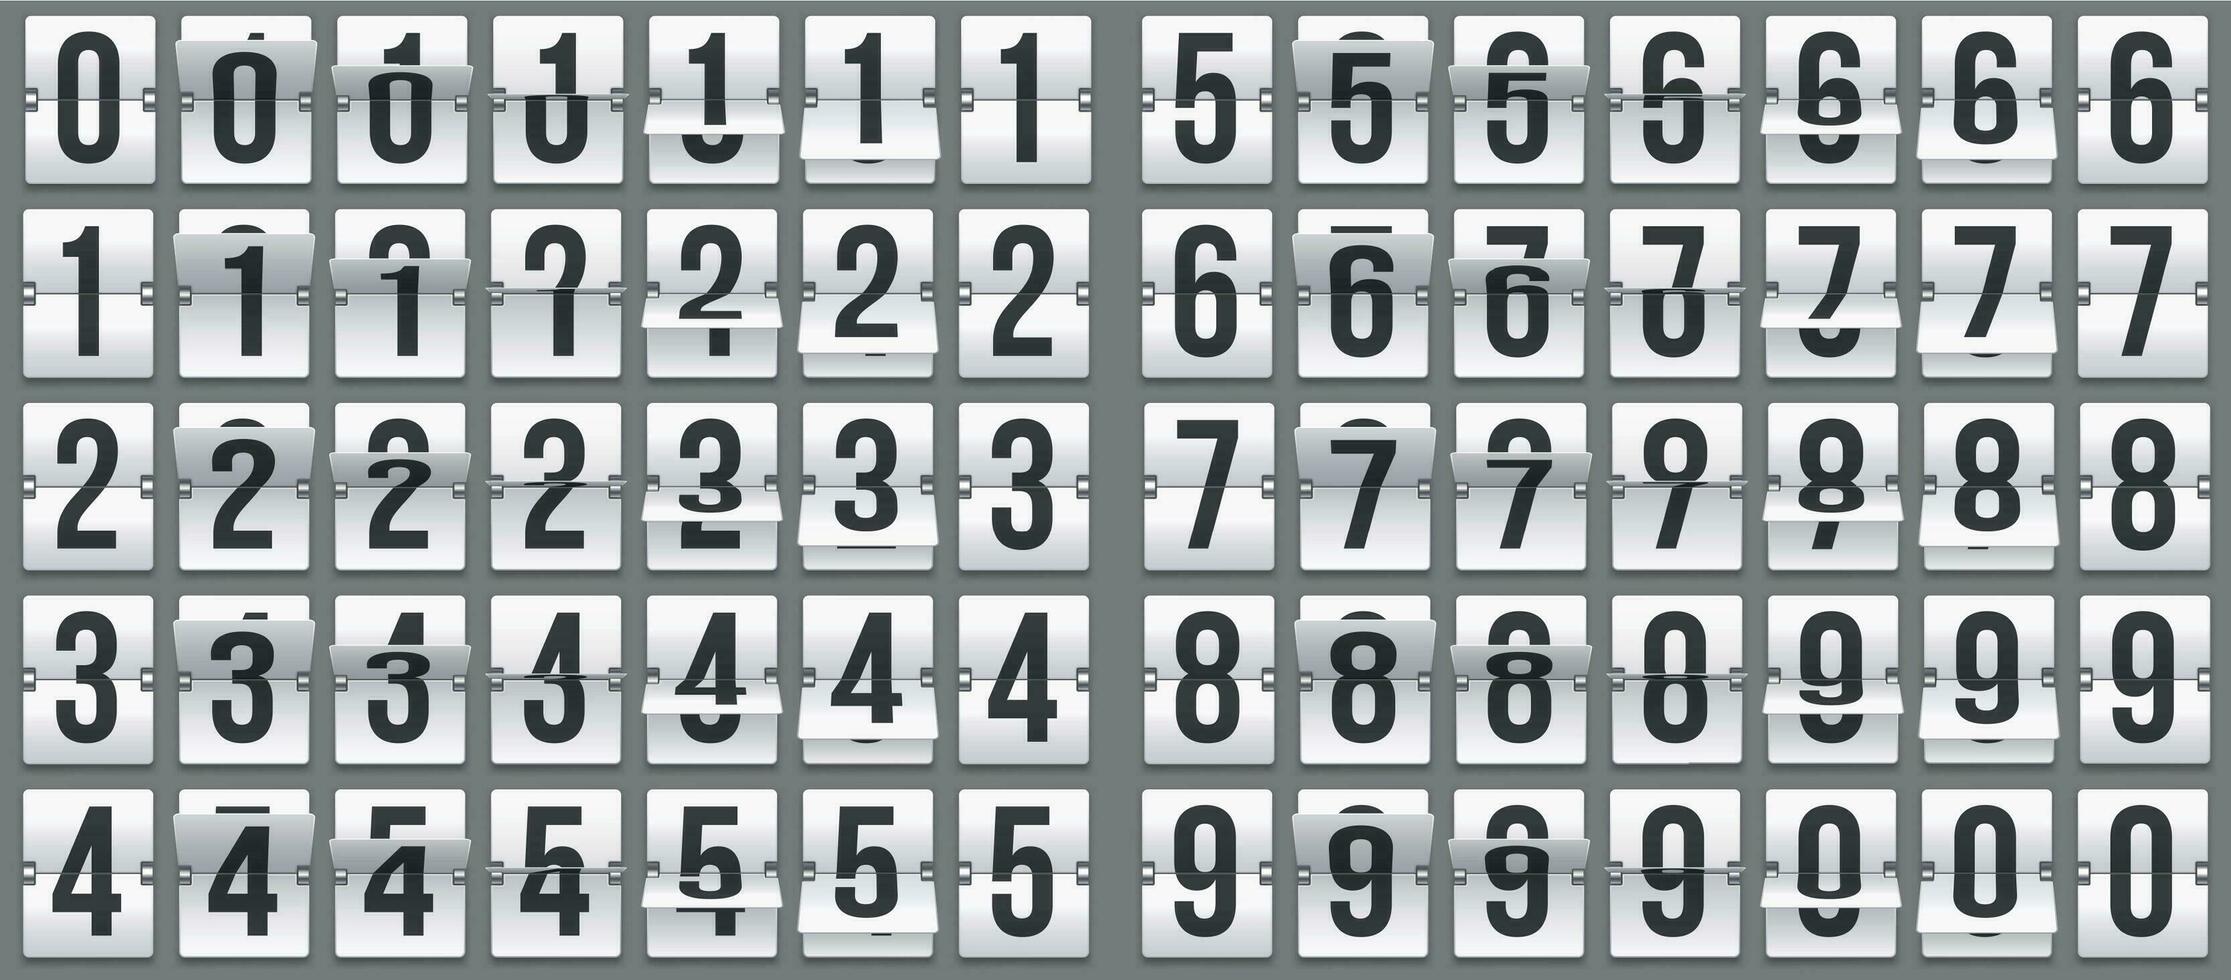 Flip Uhr Zahlen. retro Countdown Animation, mechanisch Anzeigetafel Nummer und numerisch Zähler flippt Vektor einstellen